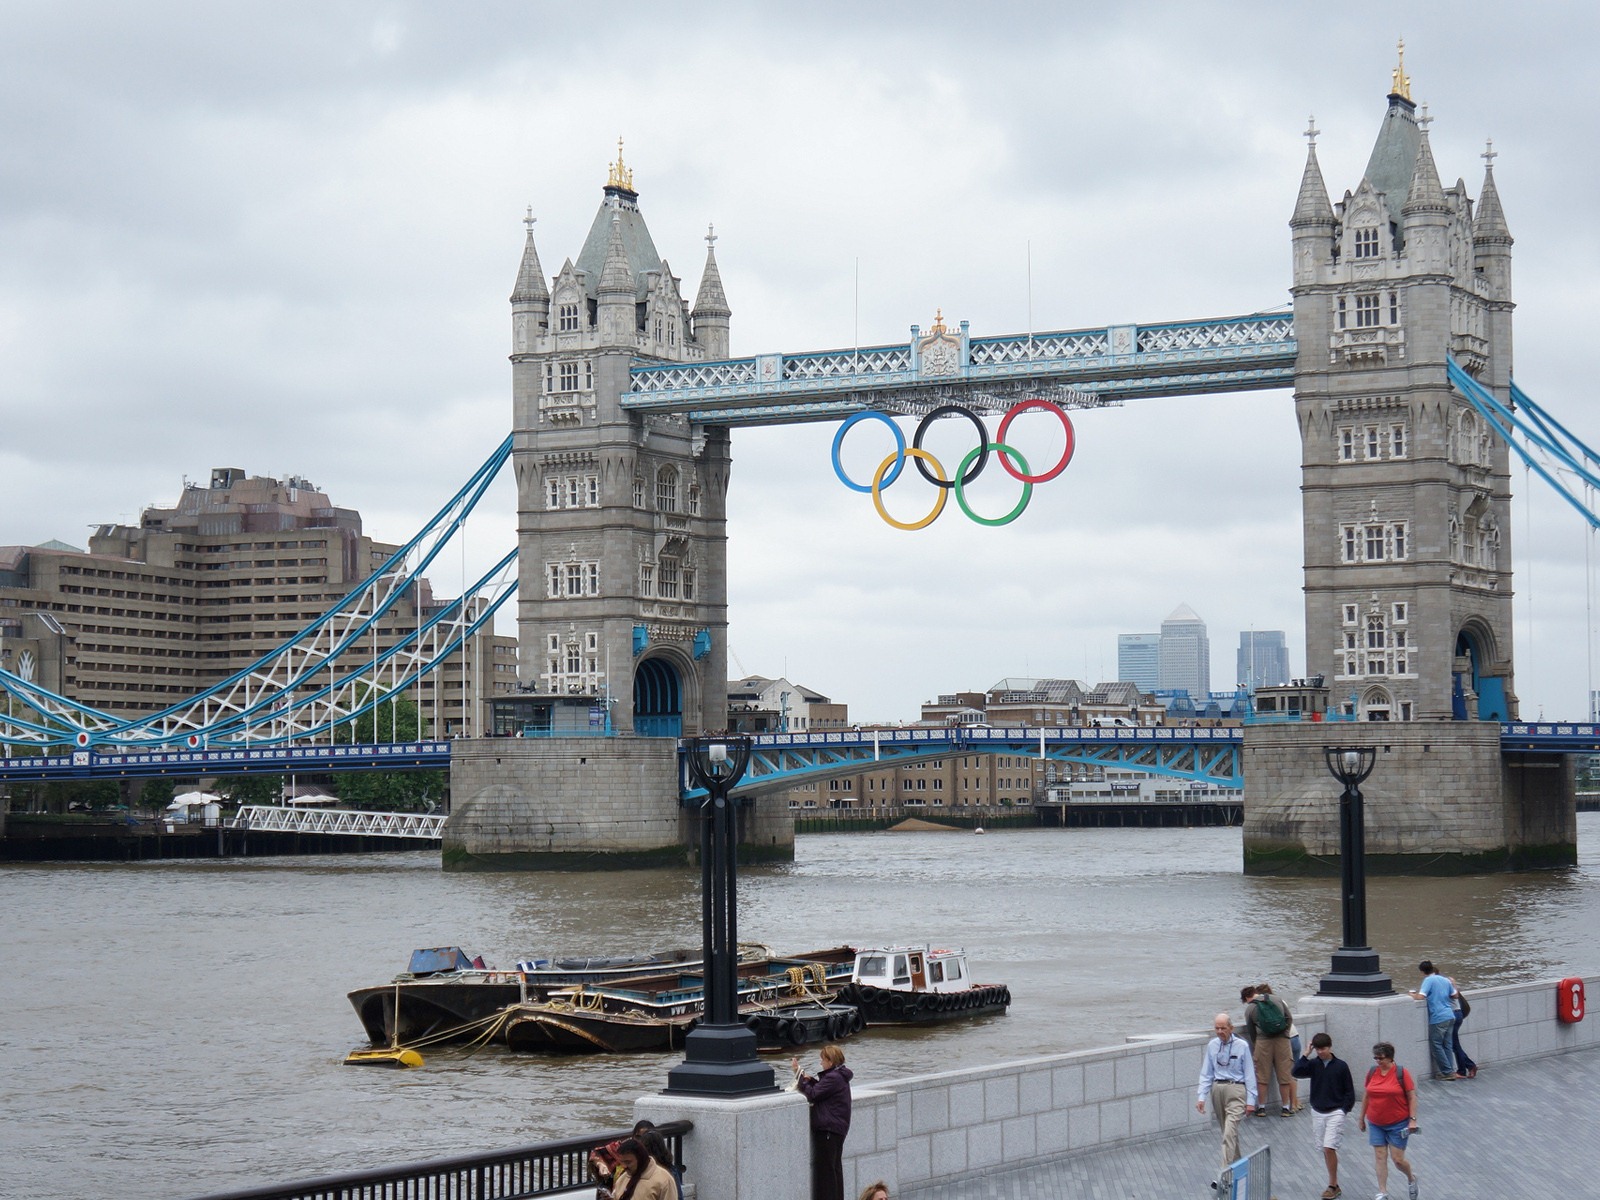 Londres 2012 Olimpiadas fondos temáticos (2) #29 - 1600x1200